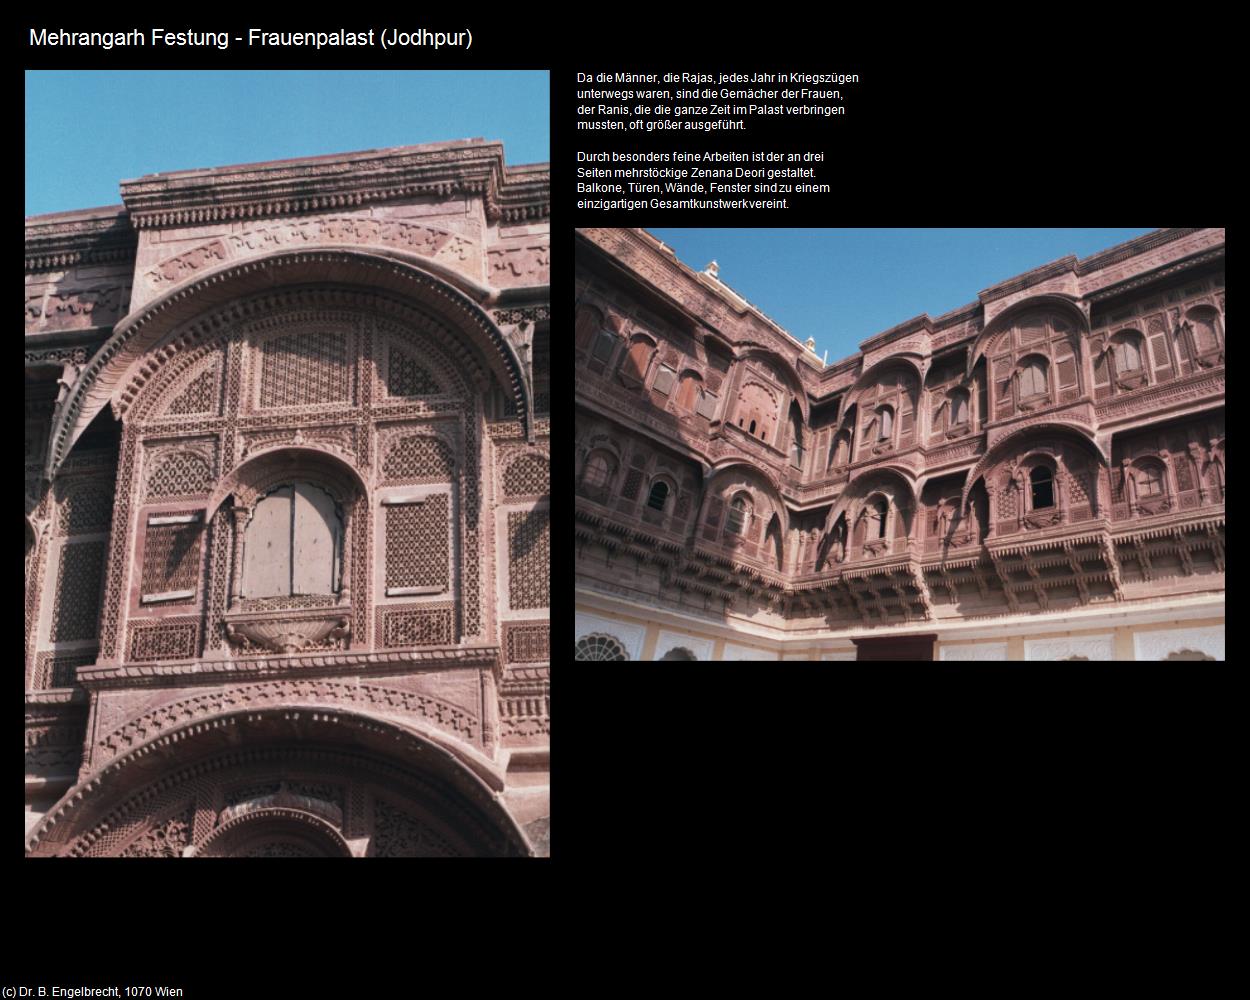 Mehrangarh Festung-Frauenpalast (Jodhpur) in Rajasthan - das Land der Könige